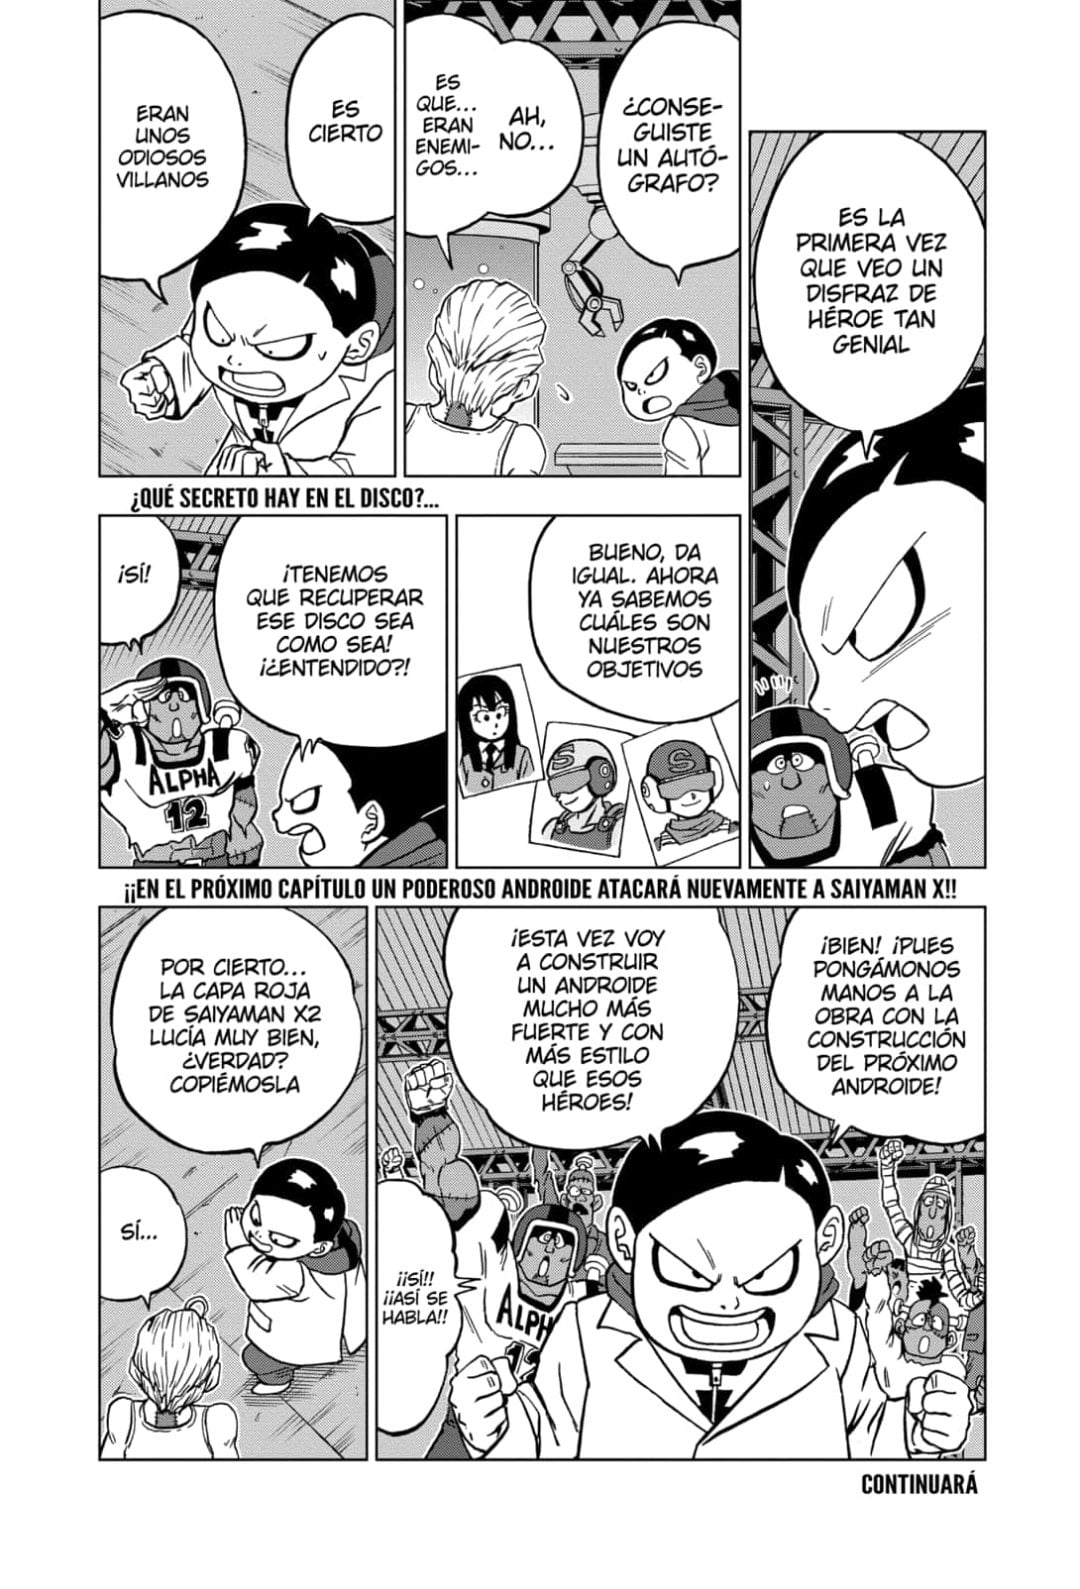 Dragon Ball Super, capítulo 89 ya disponible: cómo leer gratis en